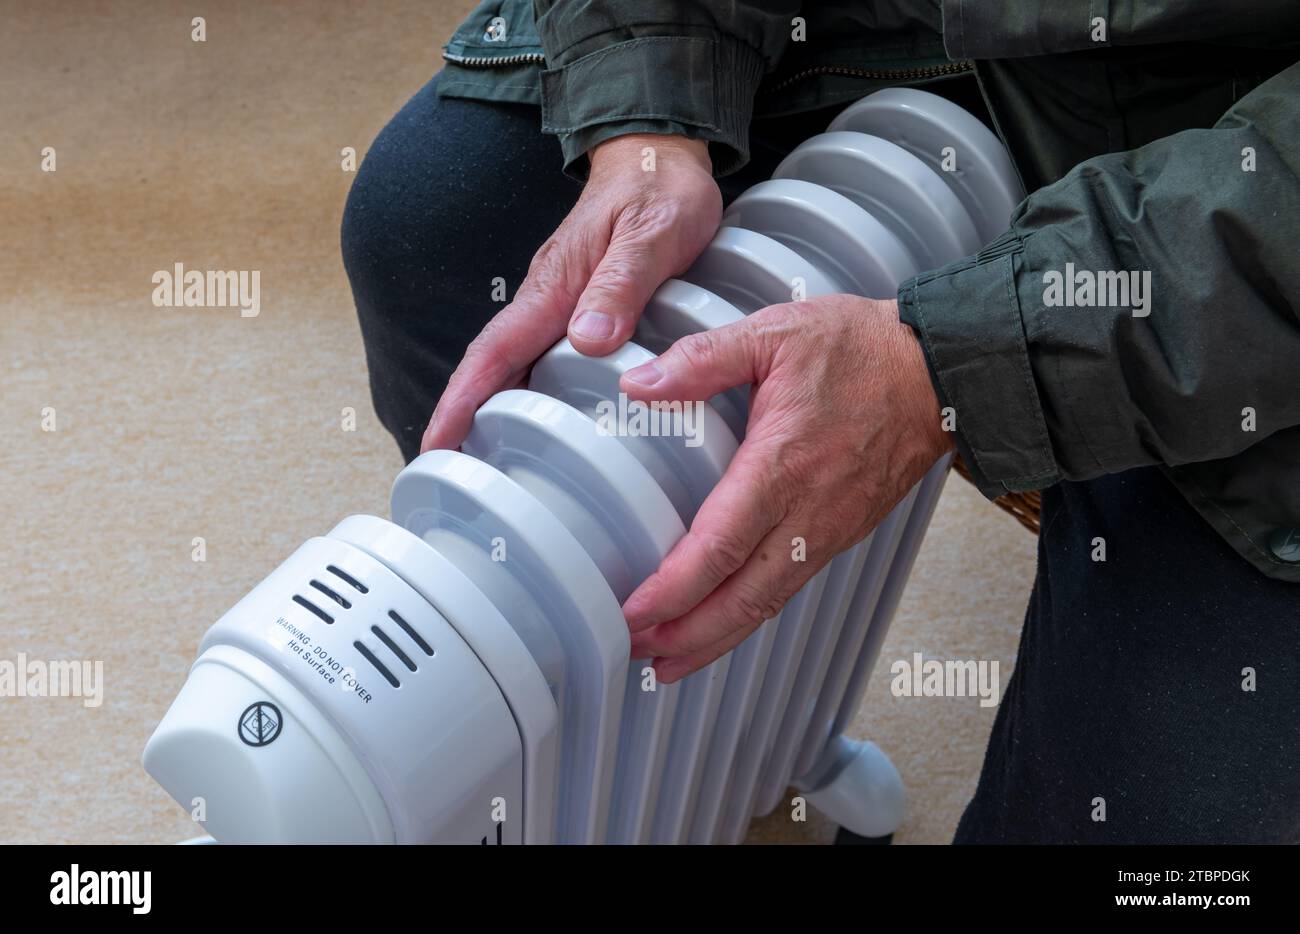 Una persona sentada en una habitación abrazando un calentador eléctrico portátil tratando de mantener el calor en el frío del invierno. Foto de stock